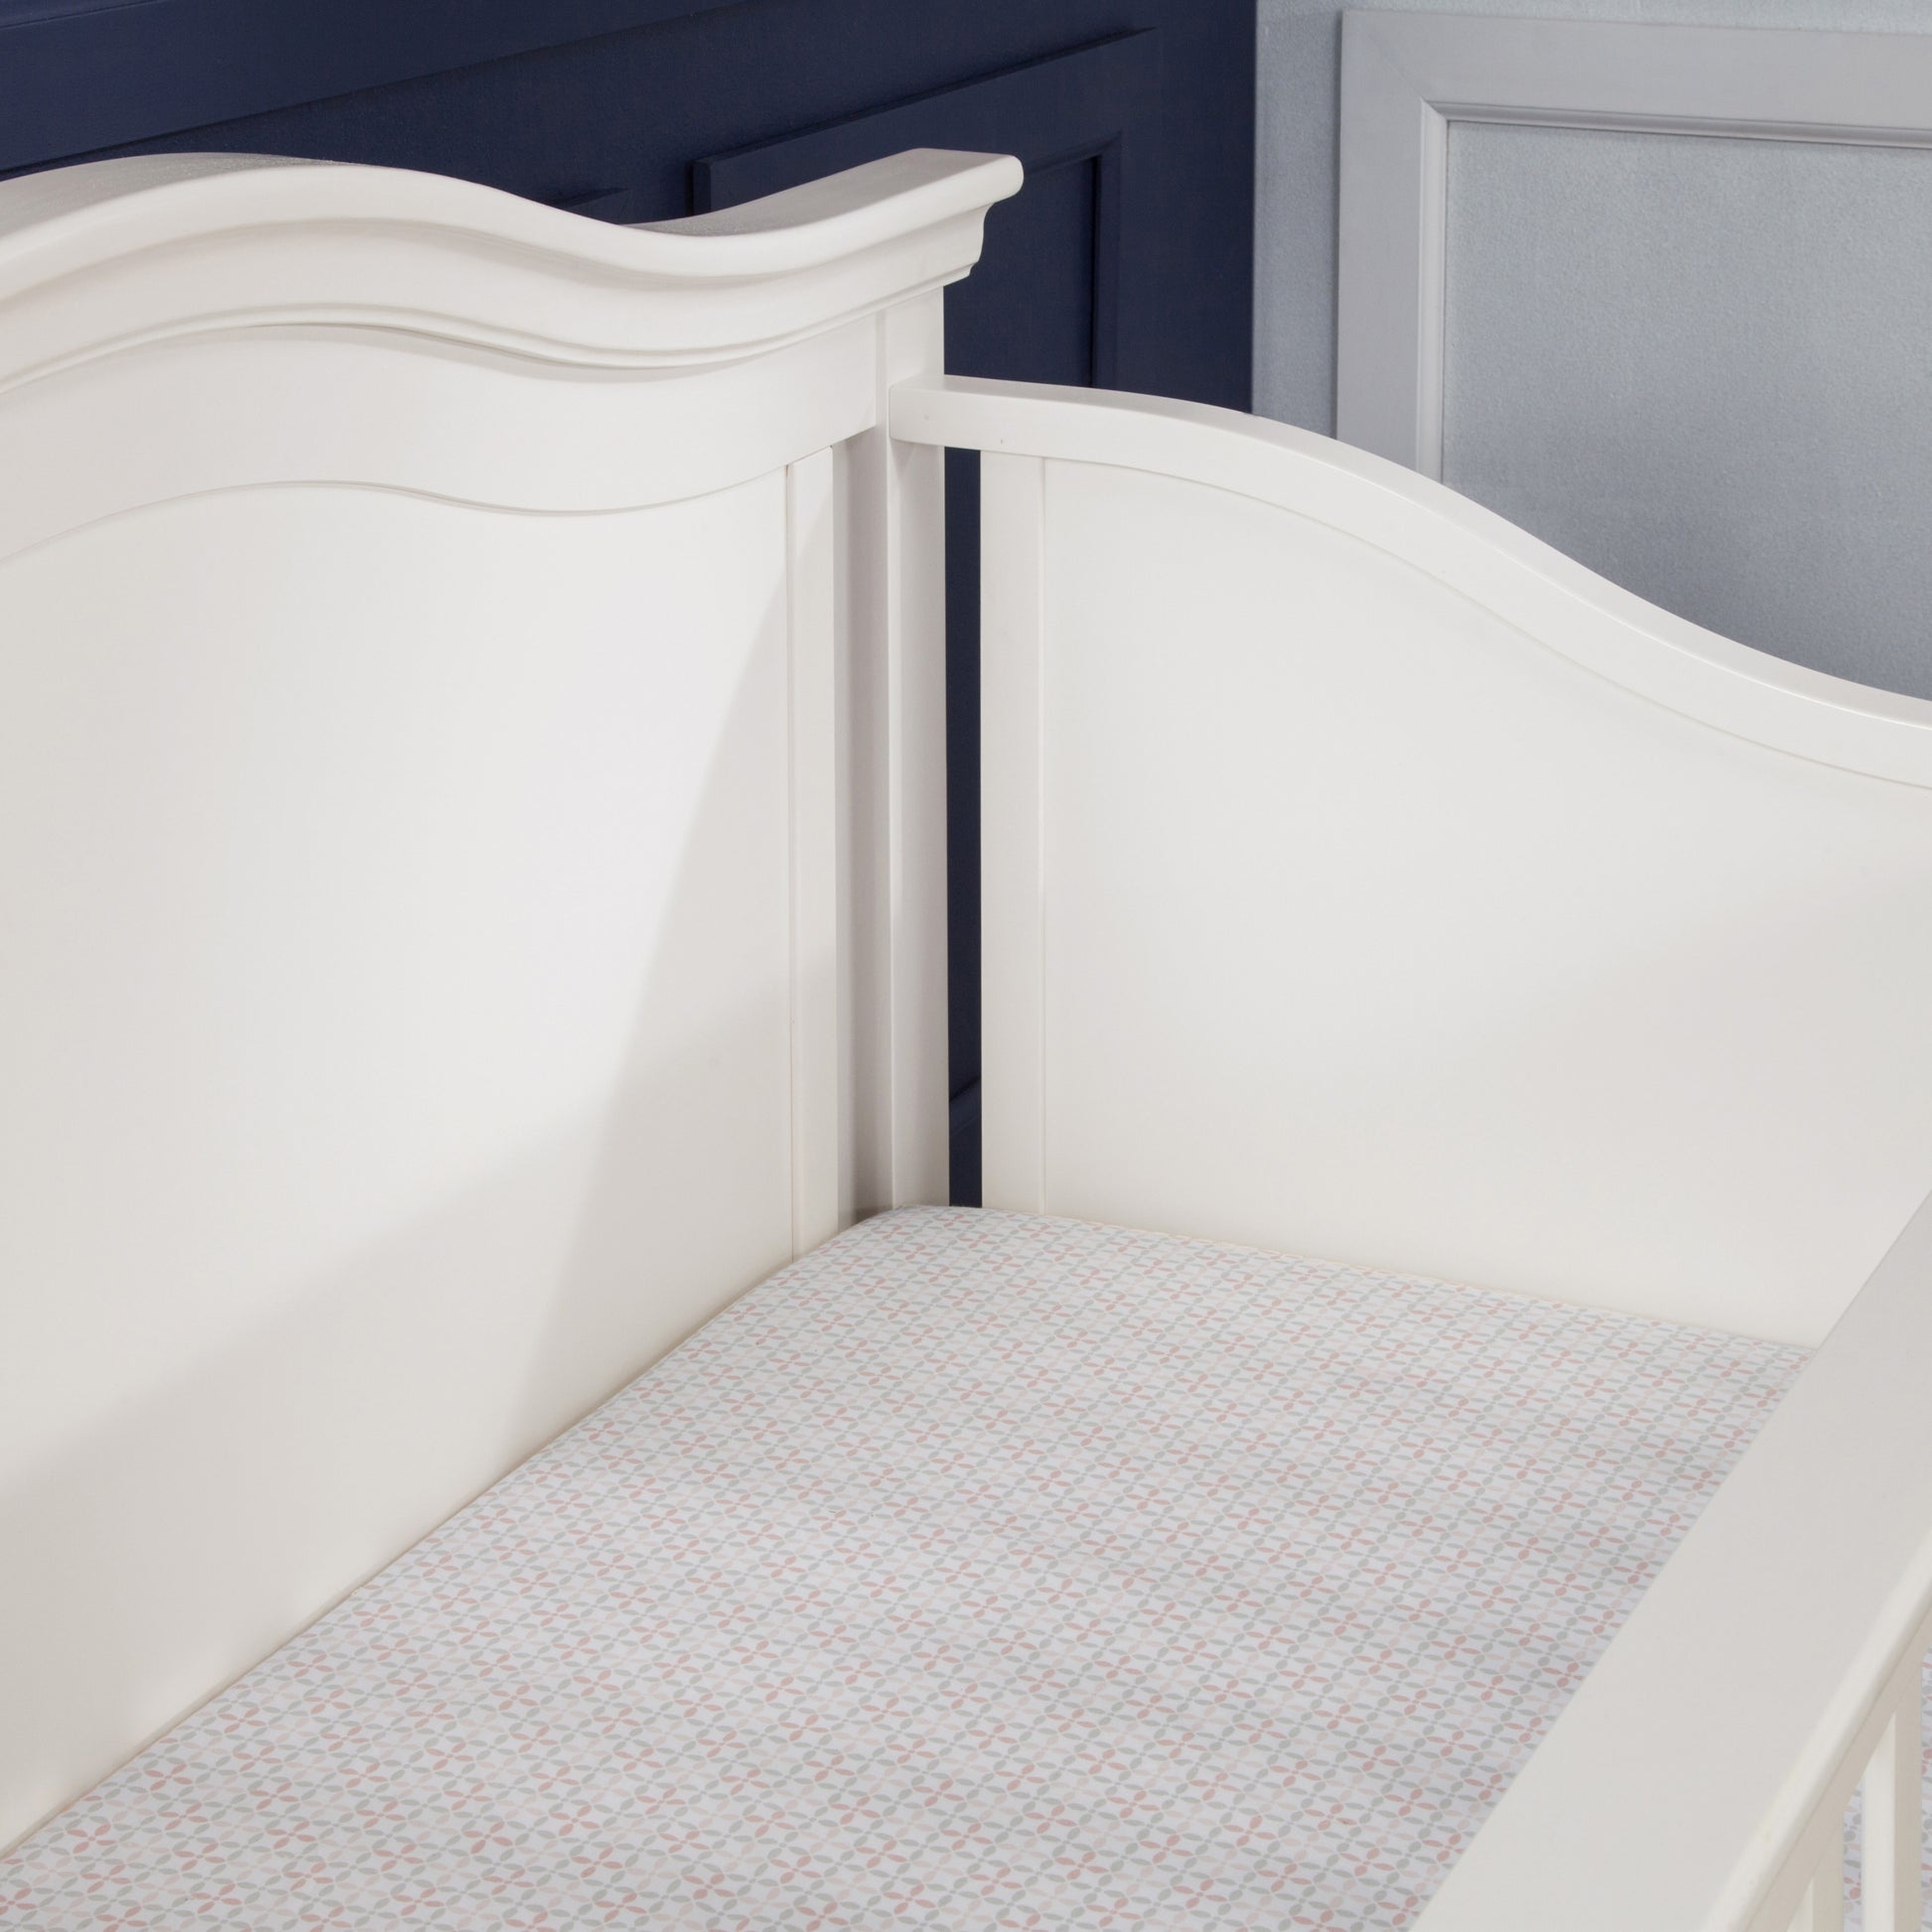 Namesake Louis 4-in-1 Convertible Crib - Warm White